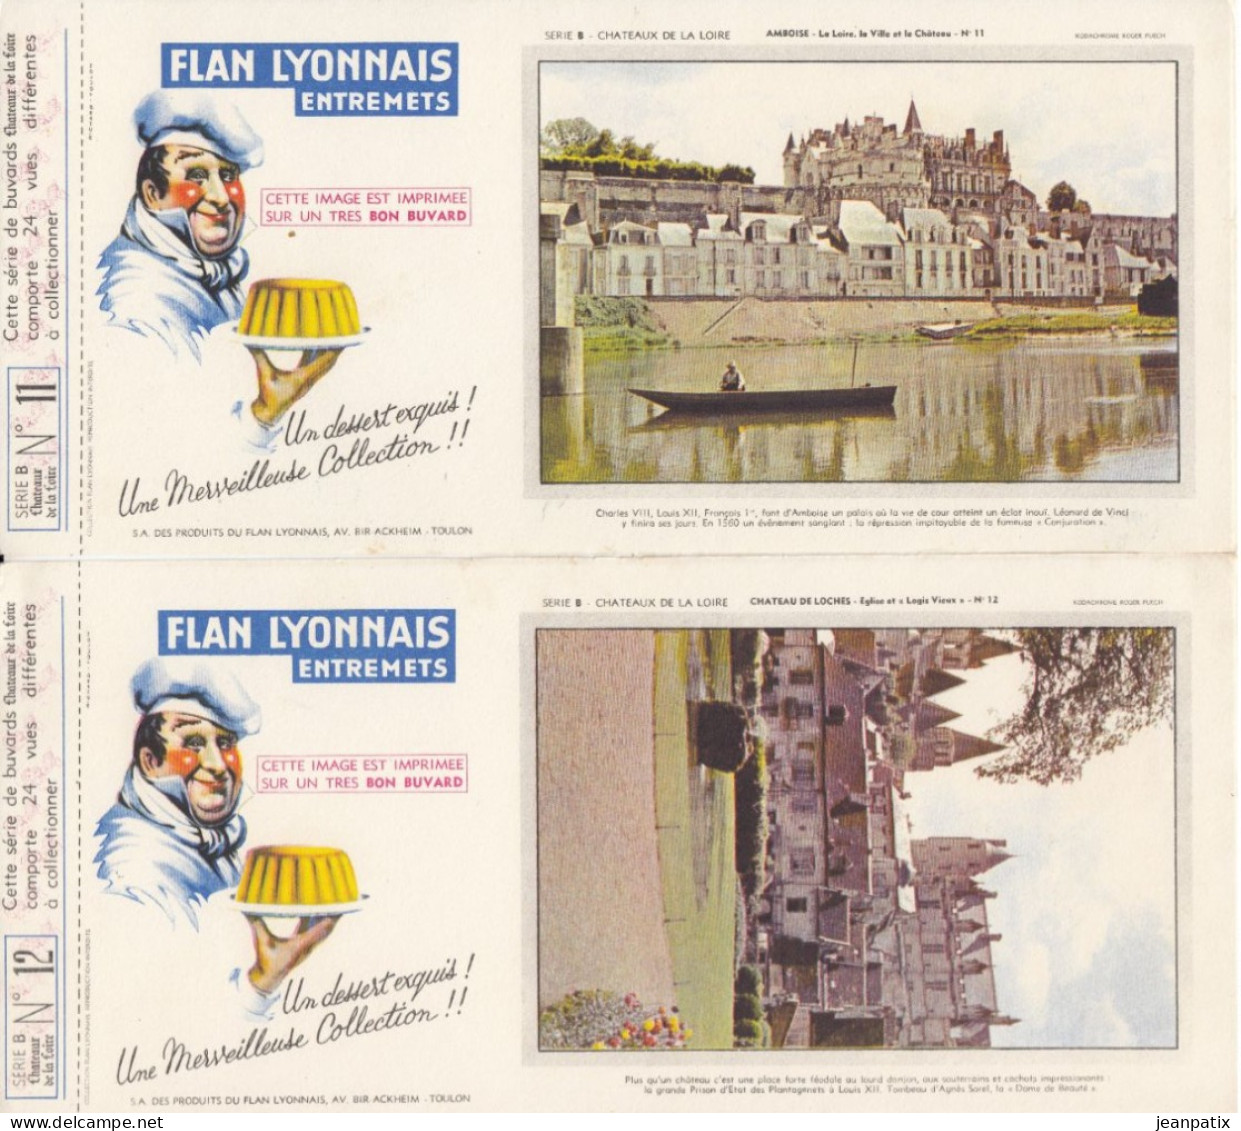 BUVARD & BLOTTER - collection complète des 24 buvards Flan lyonnais - série B - châteaux de la Loire